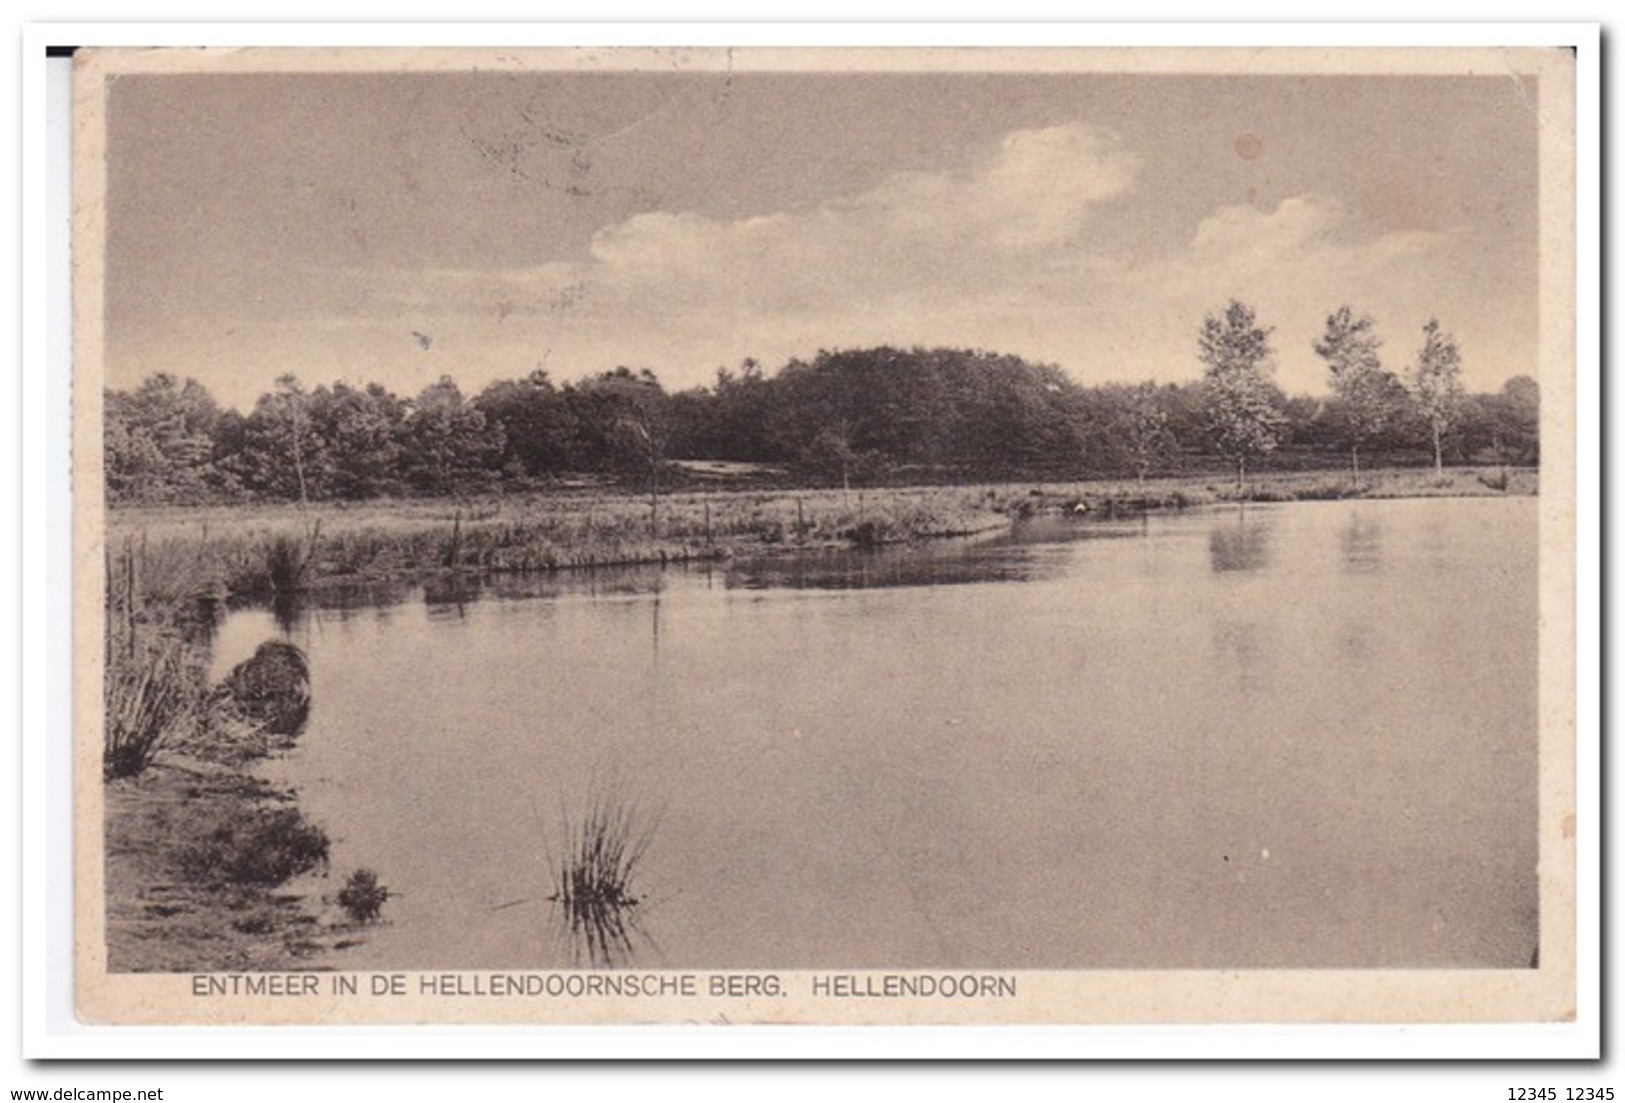 Hellendoorn, Entmeer In De Hellendoornsche Berg - Hellendoorn